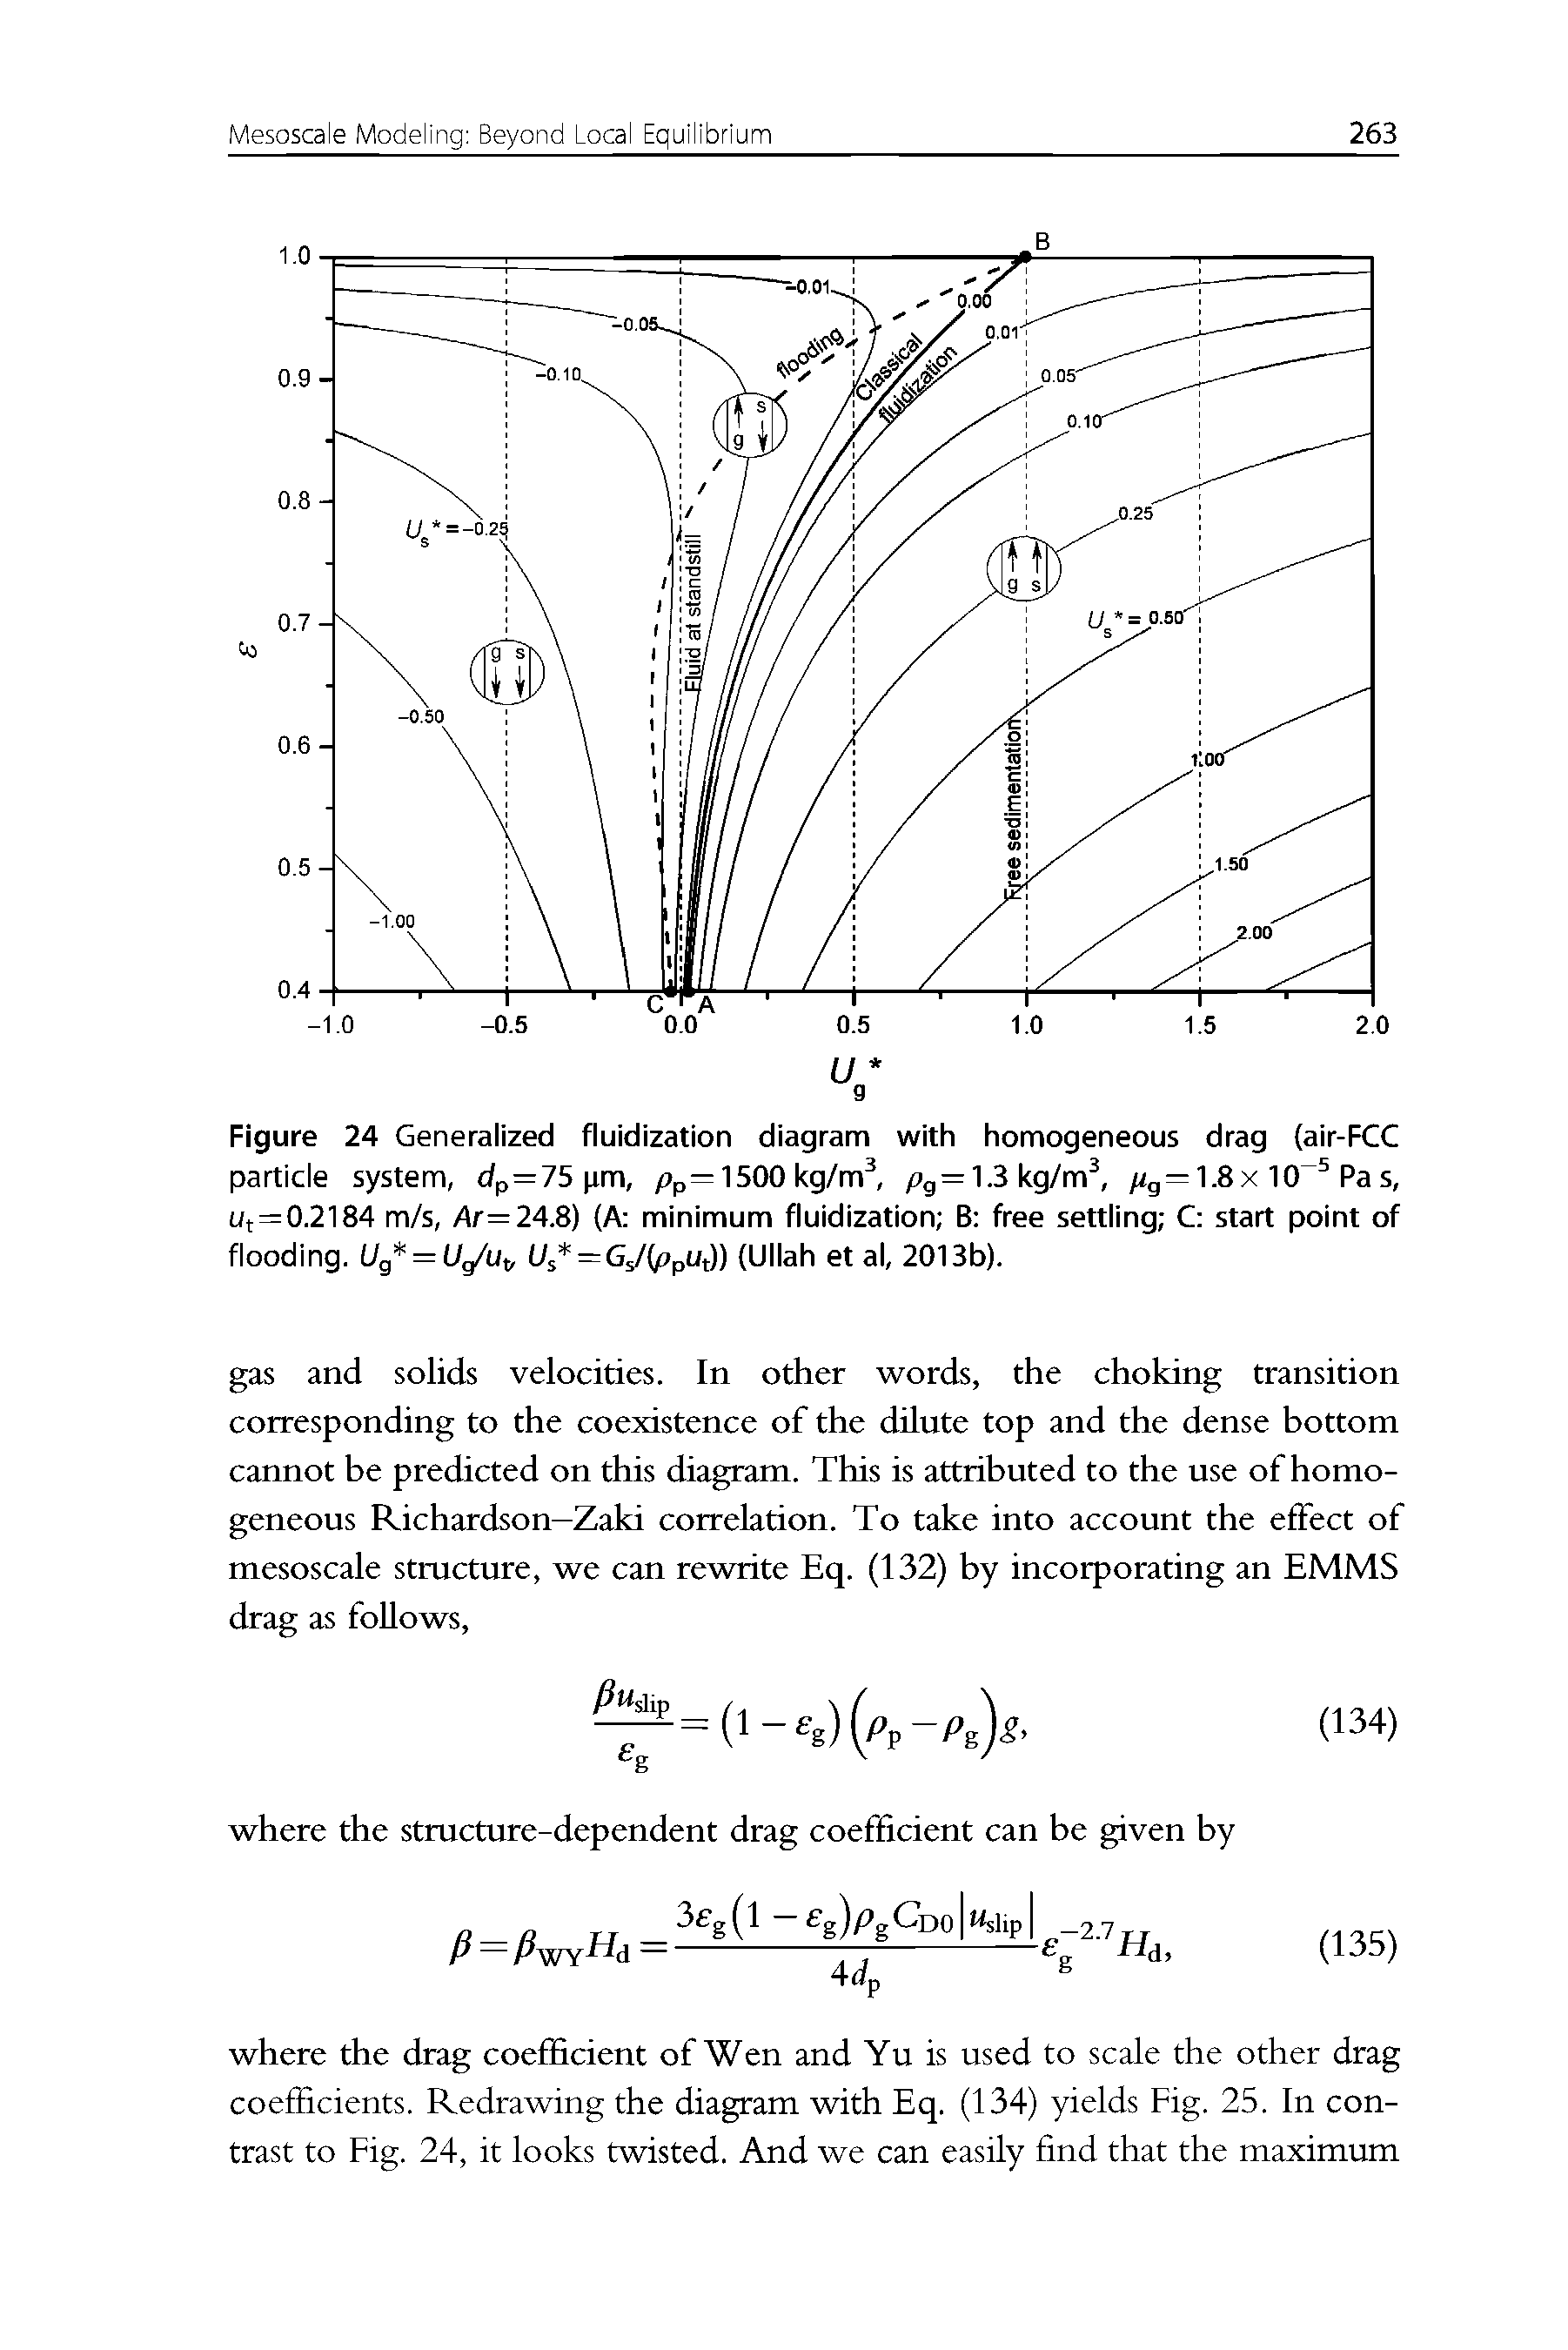 Figure 24 Generalized fluidization diagram with homogeneous drag (air-FCC...